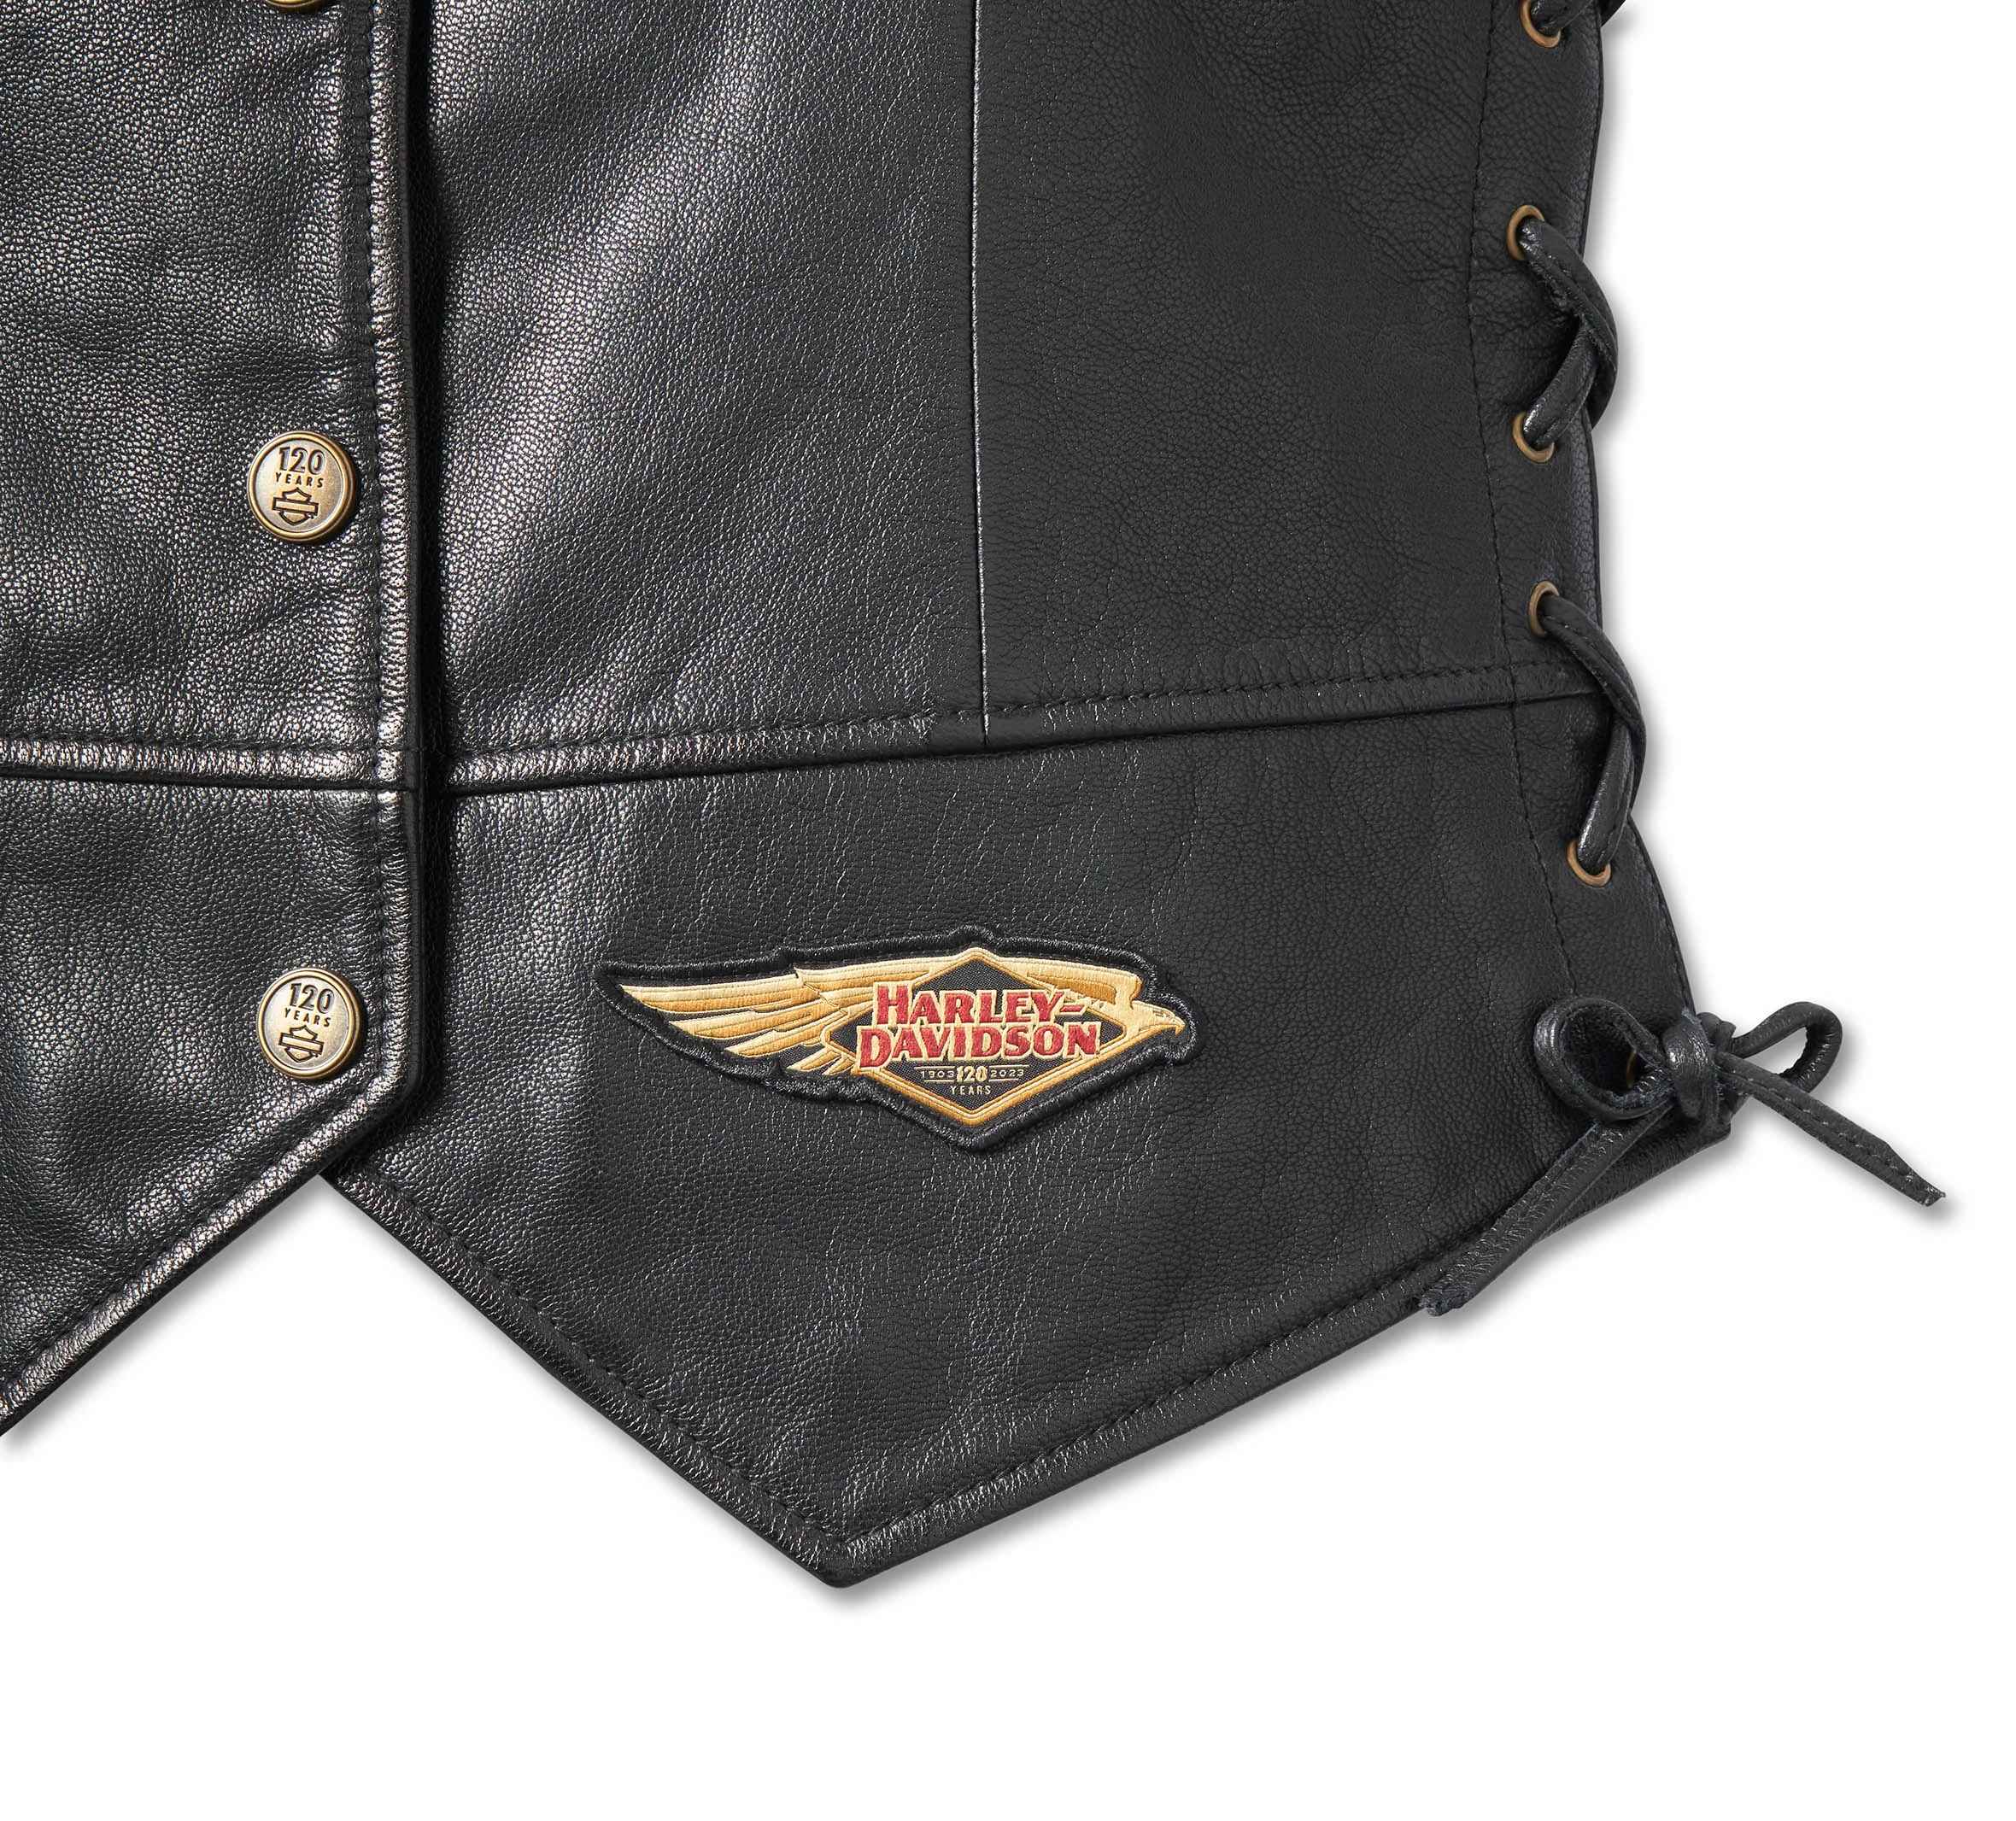 Harley-Davidson Women's Double Studded Shoulder Tote Bag Black